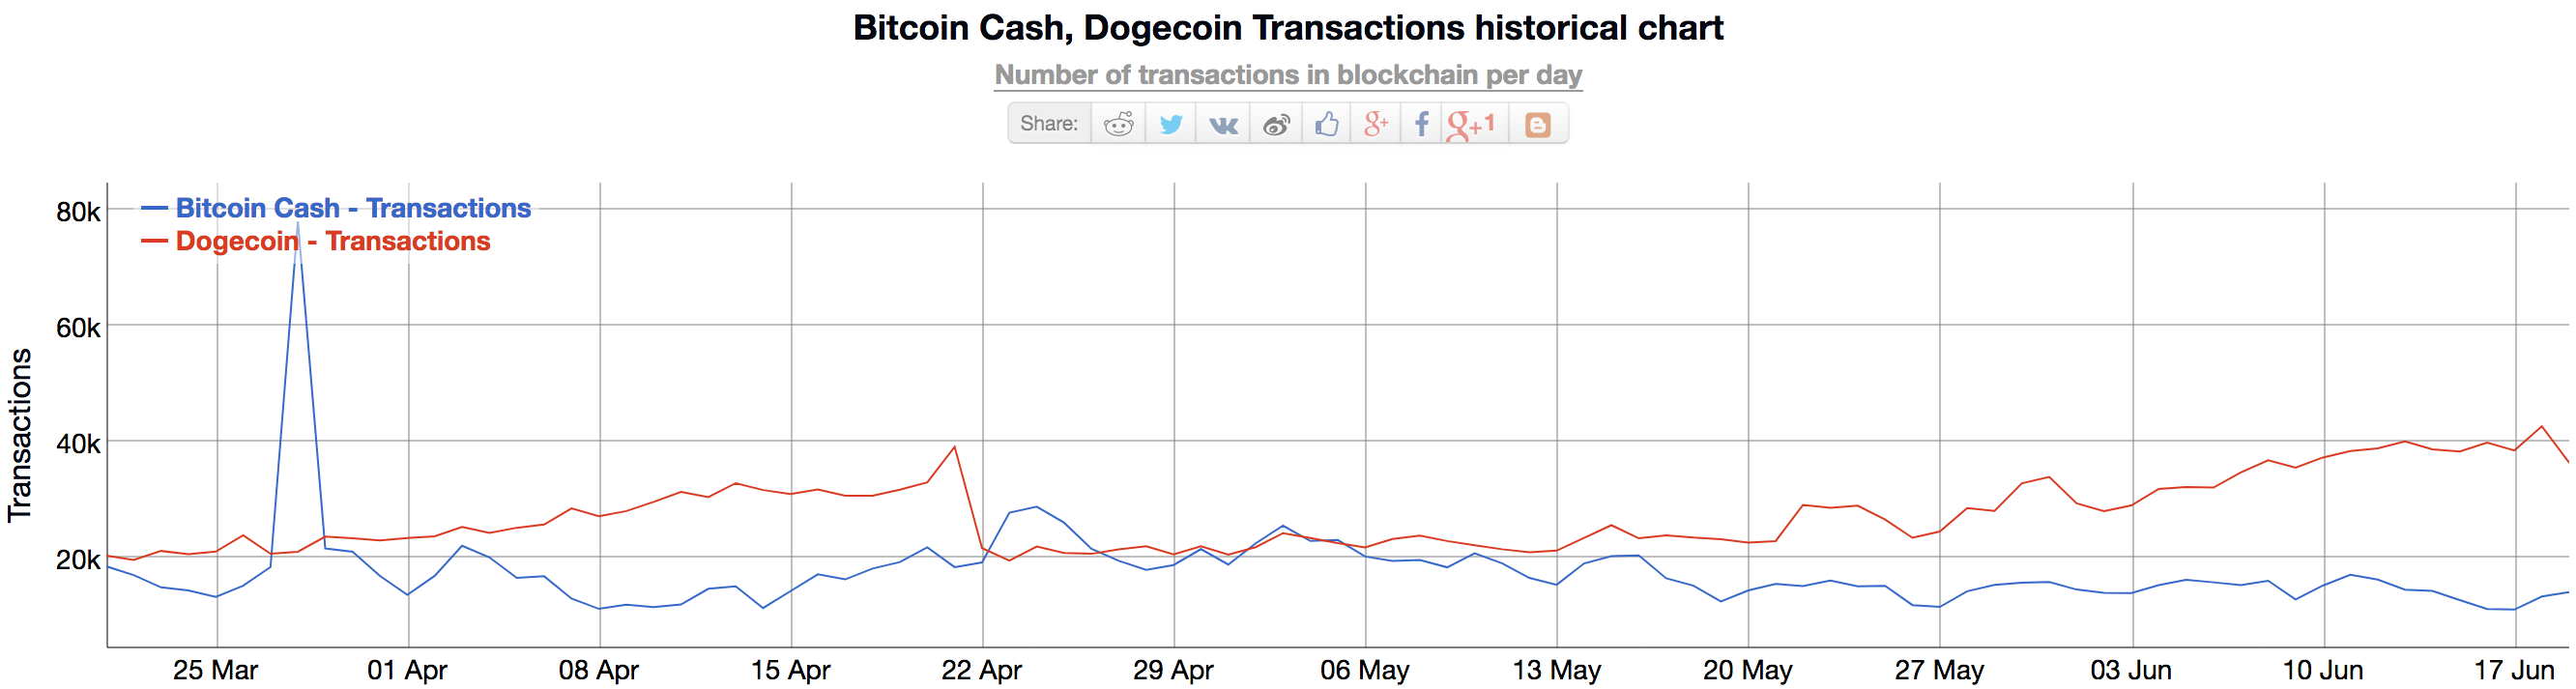 bitcoin cash to dogecoin